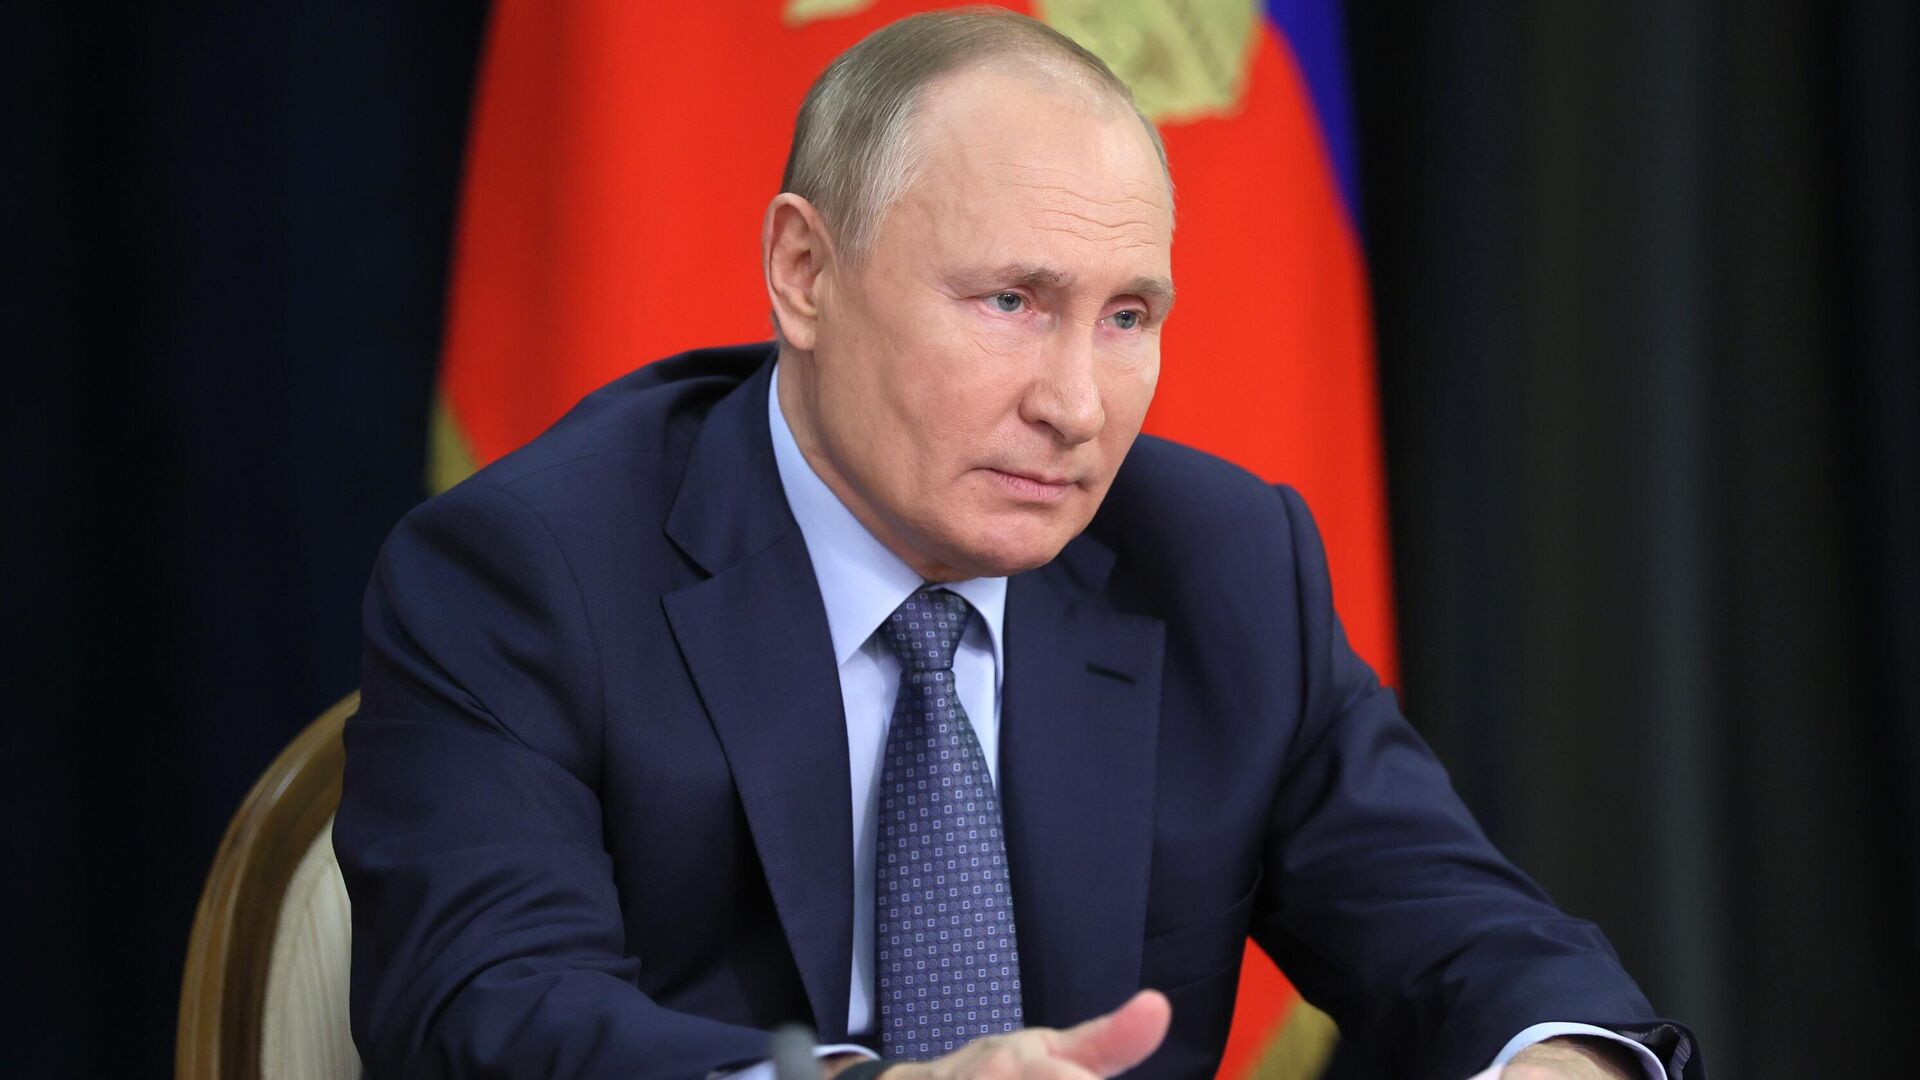 El presidente de Rusia, Vladímir Putin, durante una reunión sobre asuntos económicos, el 7 de diciembre de 2021 - Sputnik Mundo, 1920, 14.12.2021